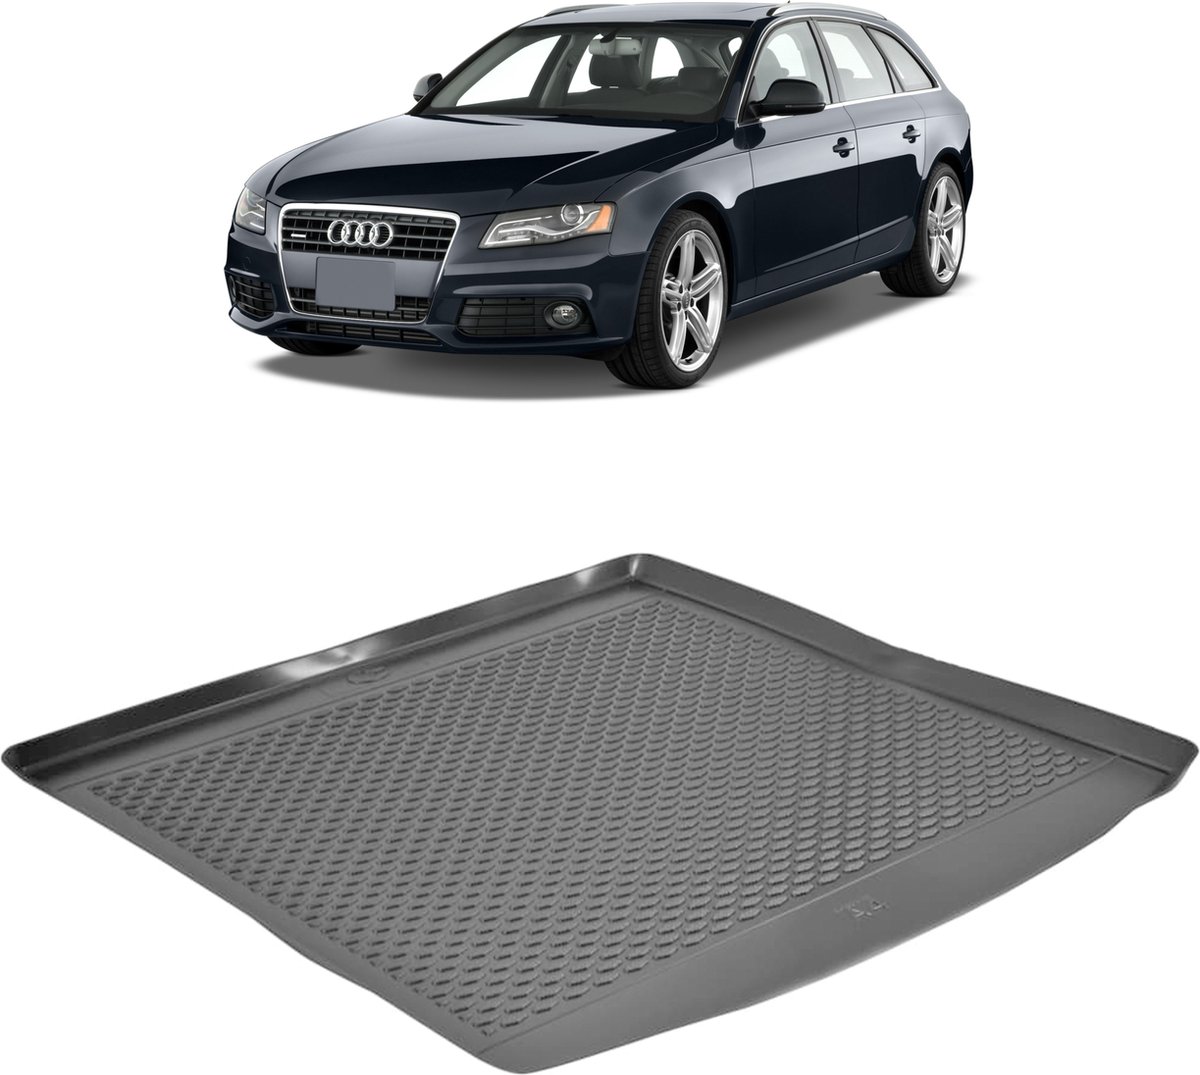 Kofferbakmat - kofferbakschaal op maat voor Audi A4 Avant - zwart - hoogwaardig kunststof - waterbestendig - gemakkelijk te reinigen en afspoelbaar